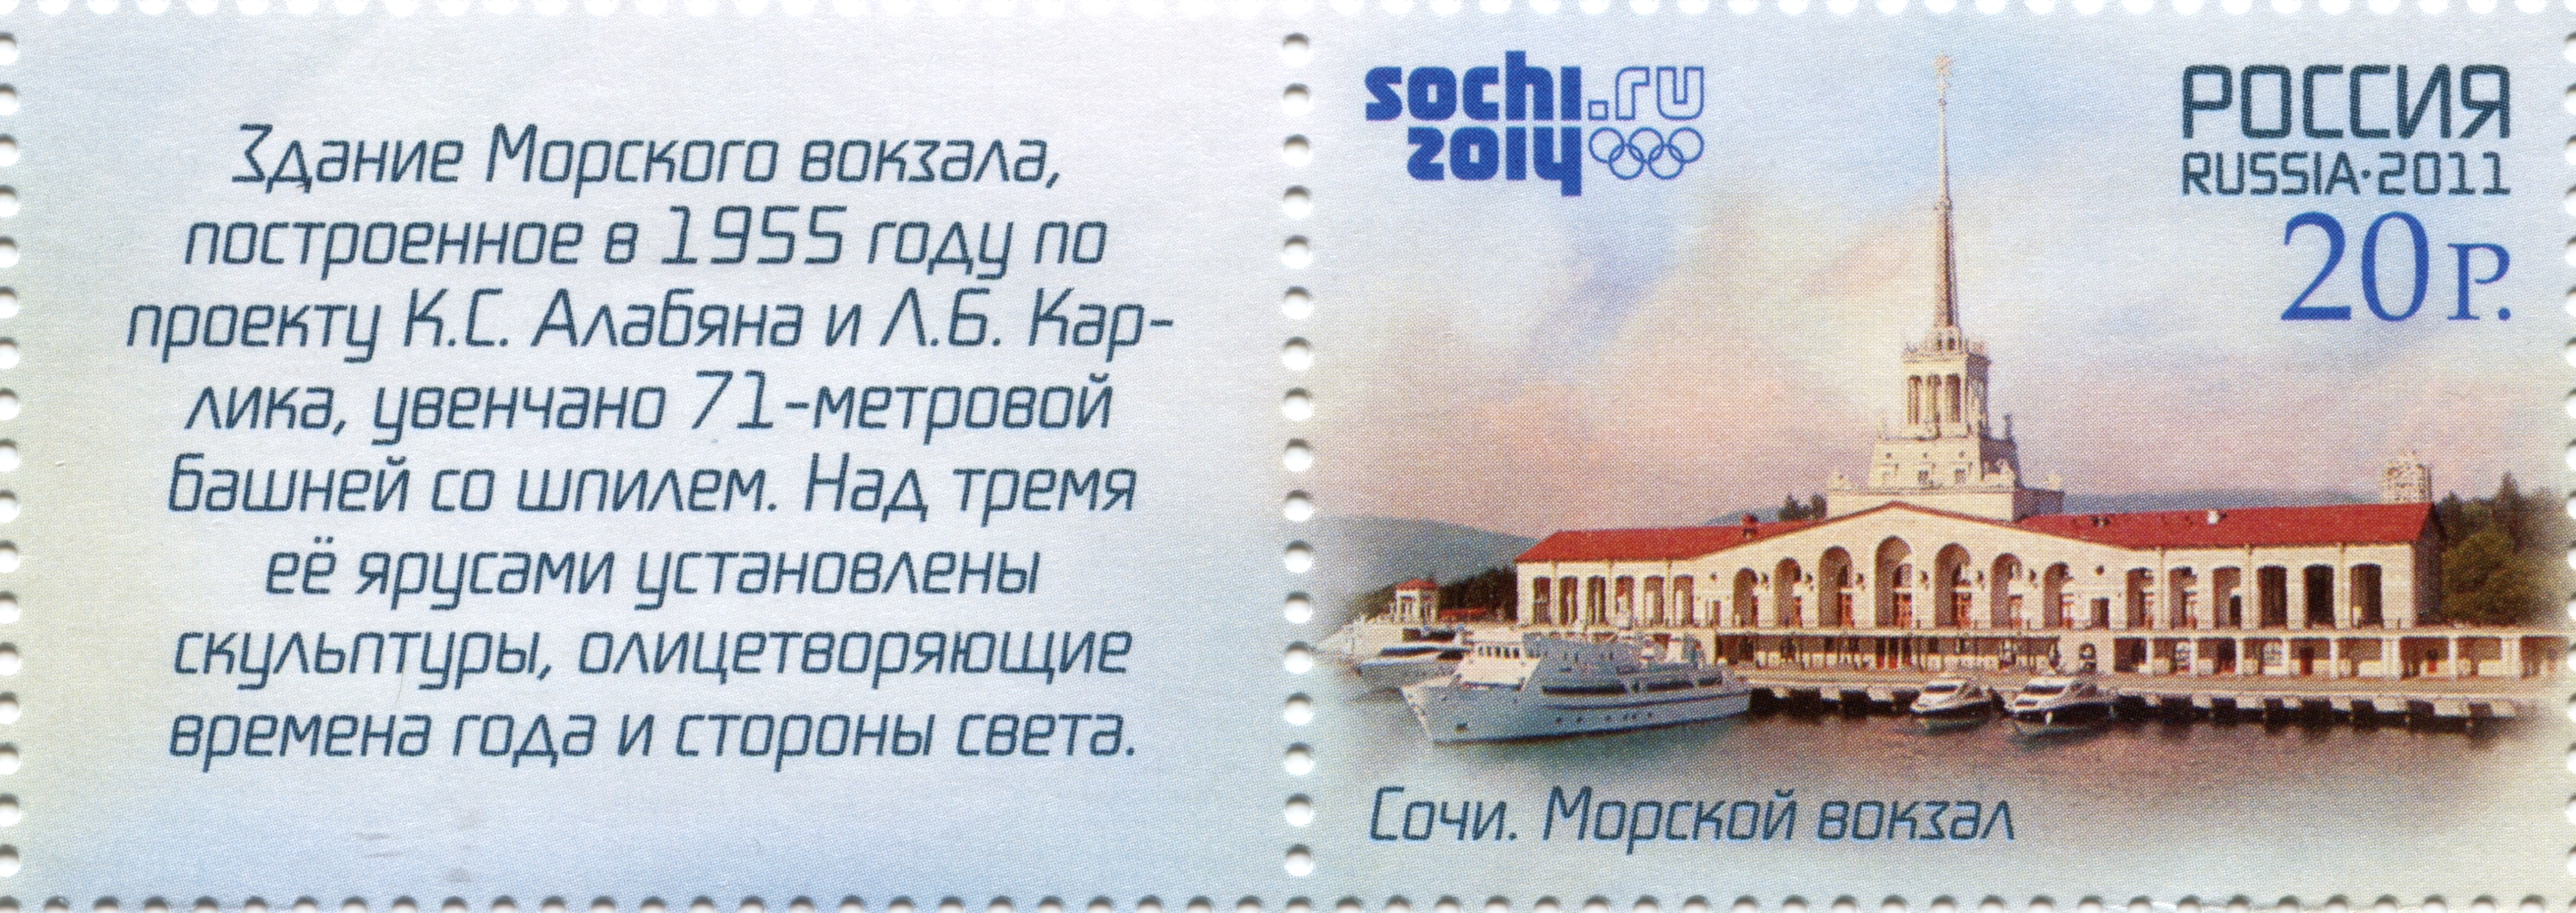 Morskoi vokzal Sochi